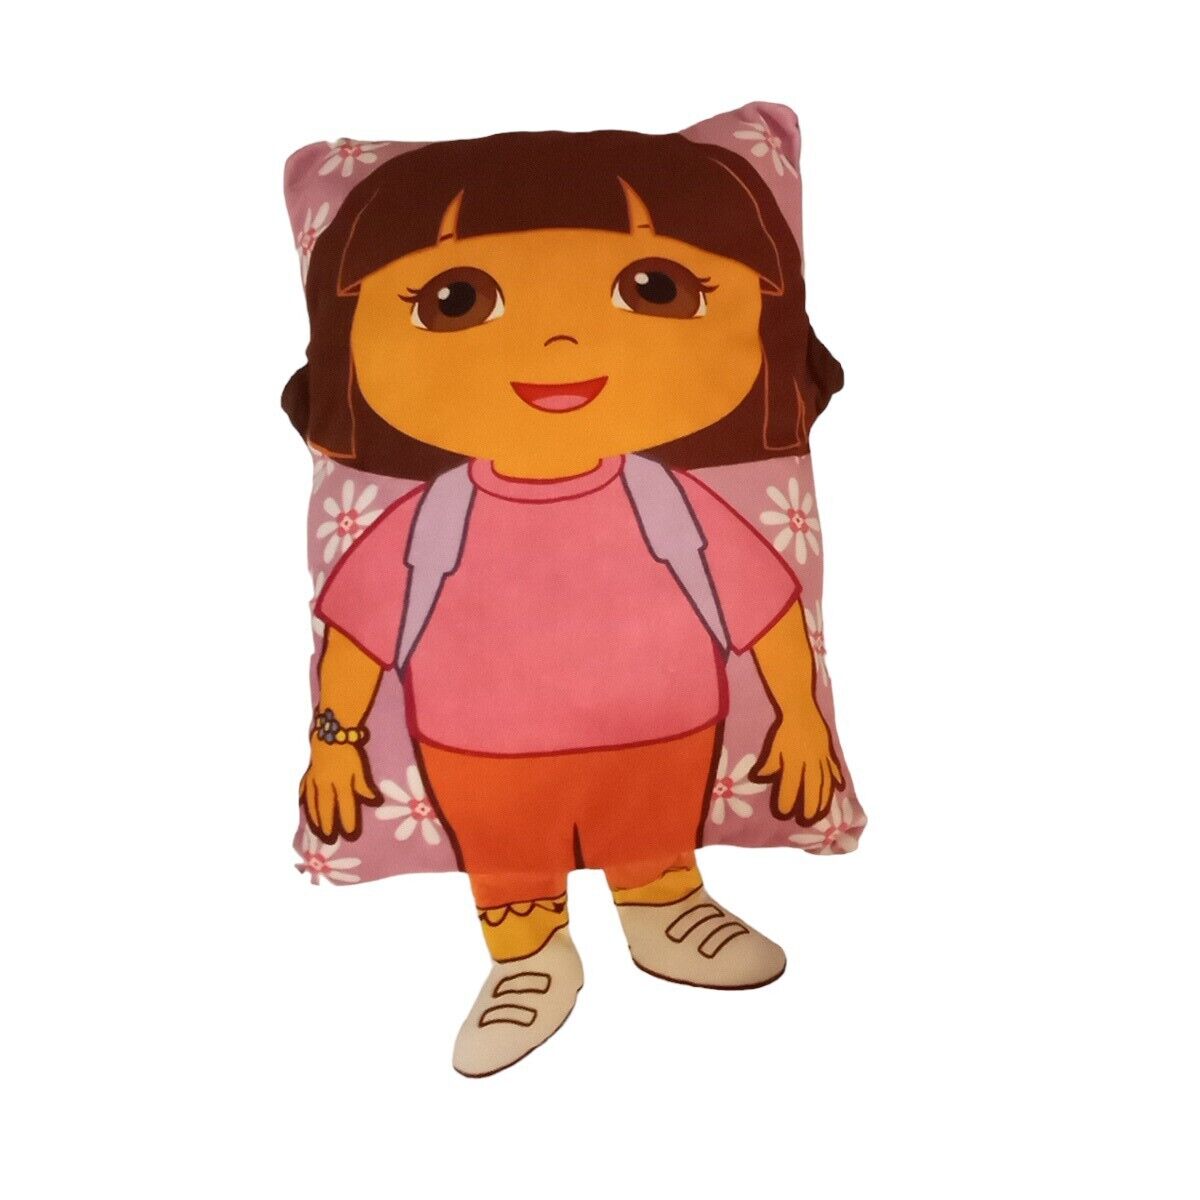 Nickelodeon 2013 Dora the Explorer Rare 24